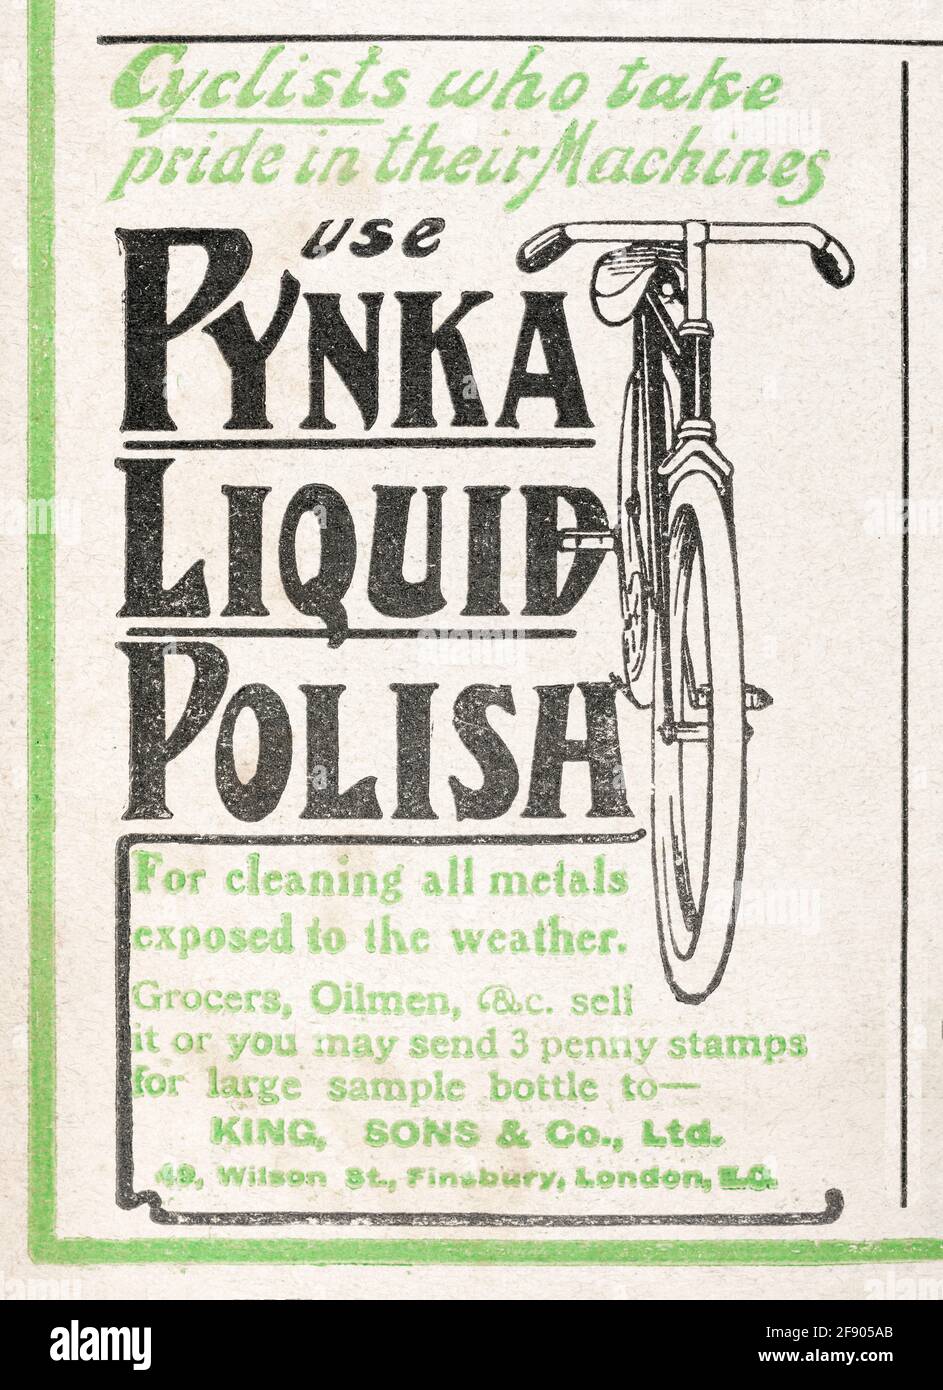 Vecchio spot vittoriano Pynka di pasta per biciclette d'epoca dal 1906 - standard pre-pubblicità. Storia della pubblicità, vecchie pubblicità ciclistiche. Foto Stock